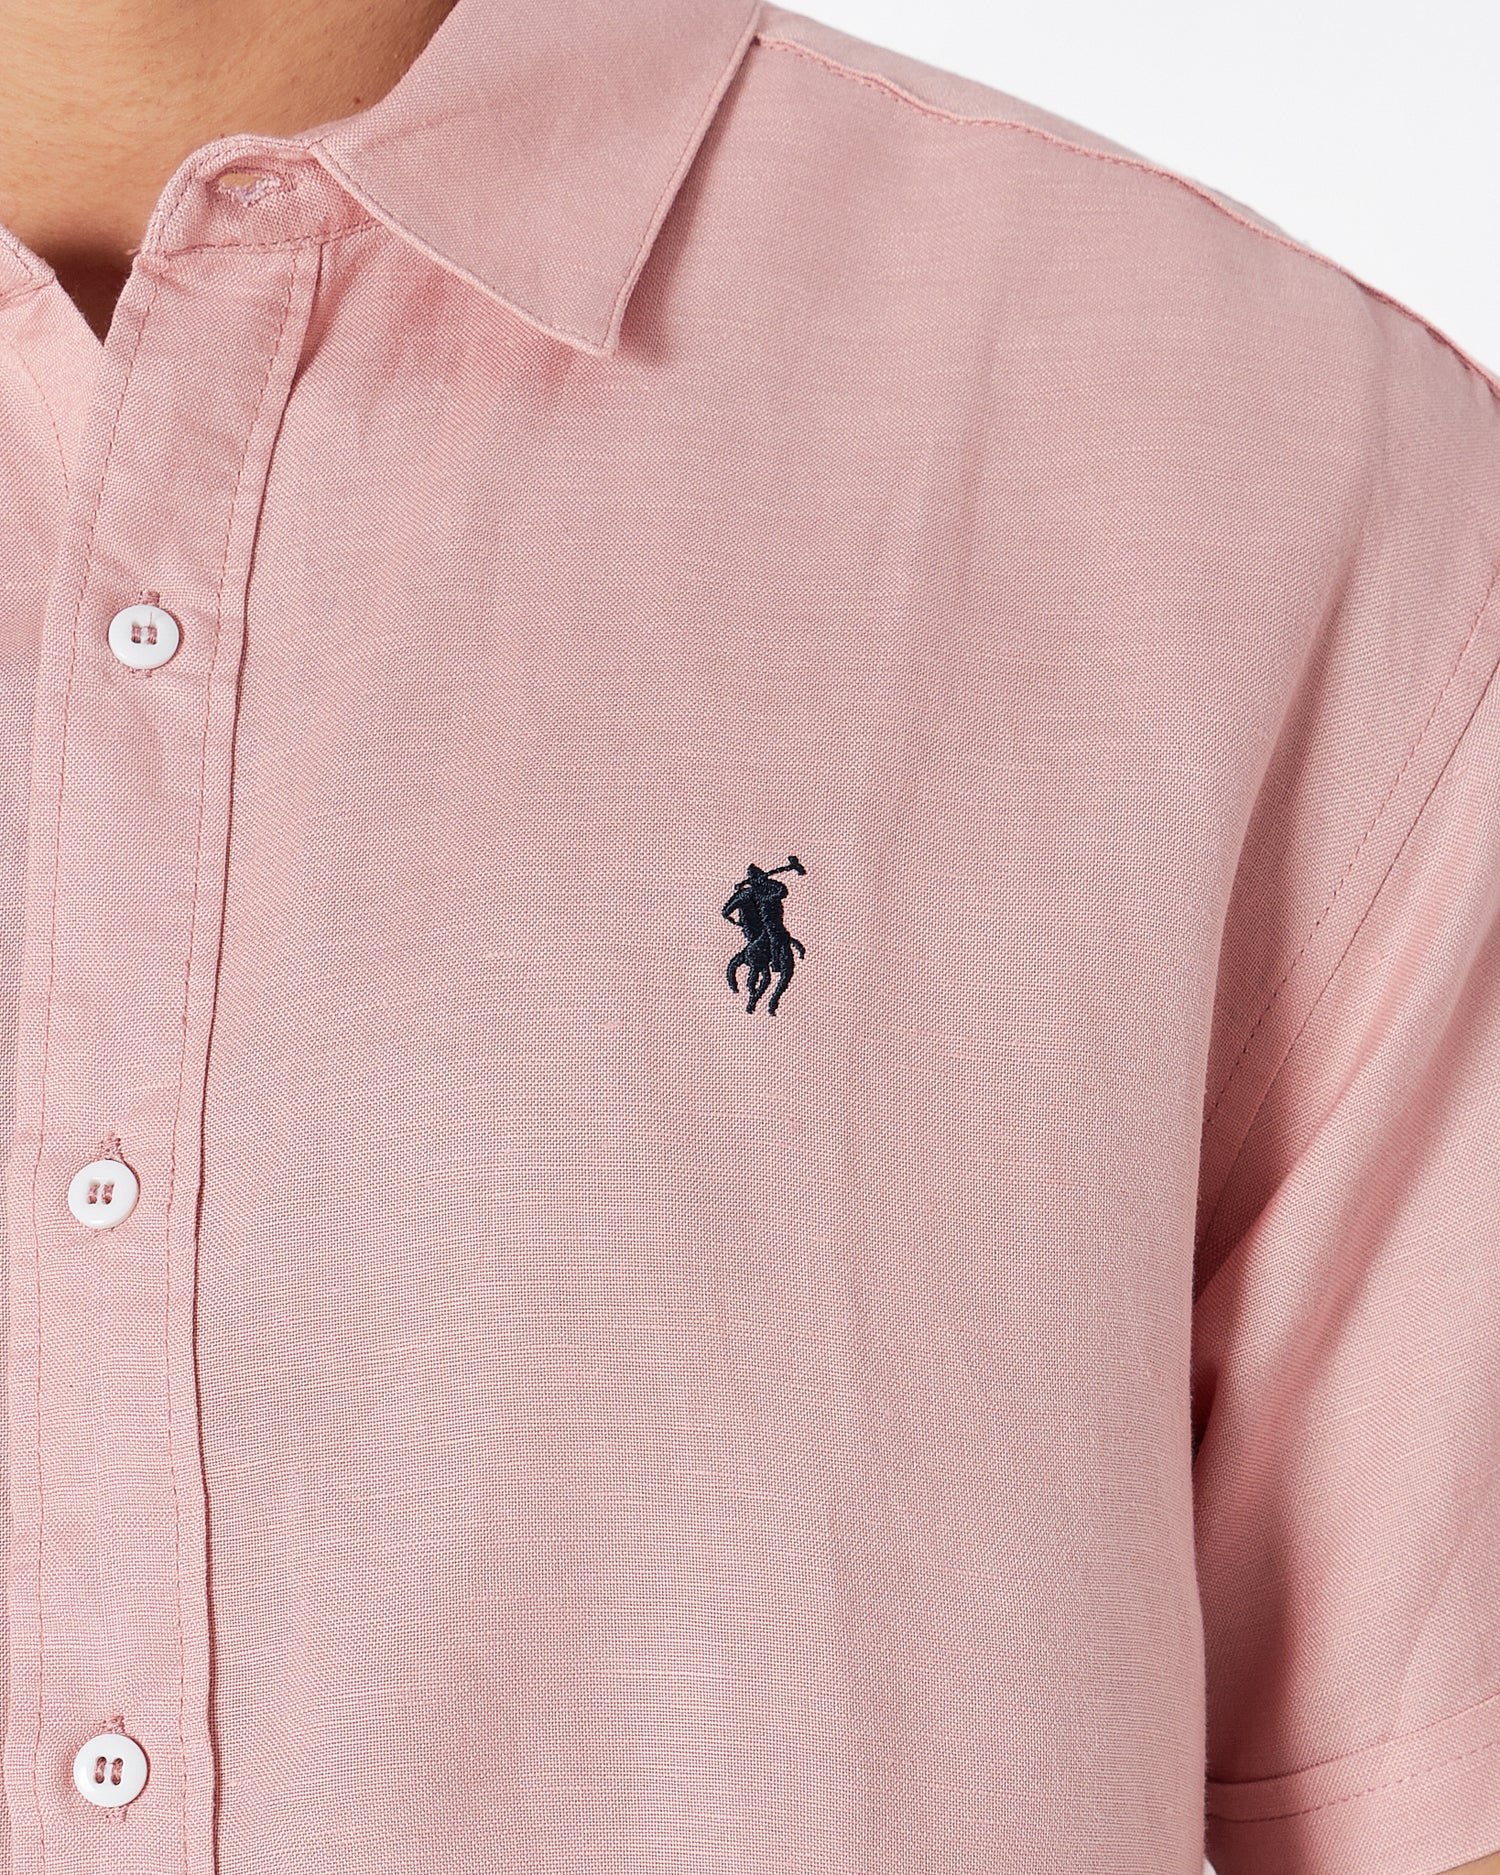 RL 면 남성 핑크 셔츠 반팔 28.90